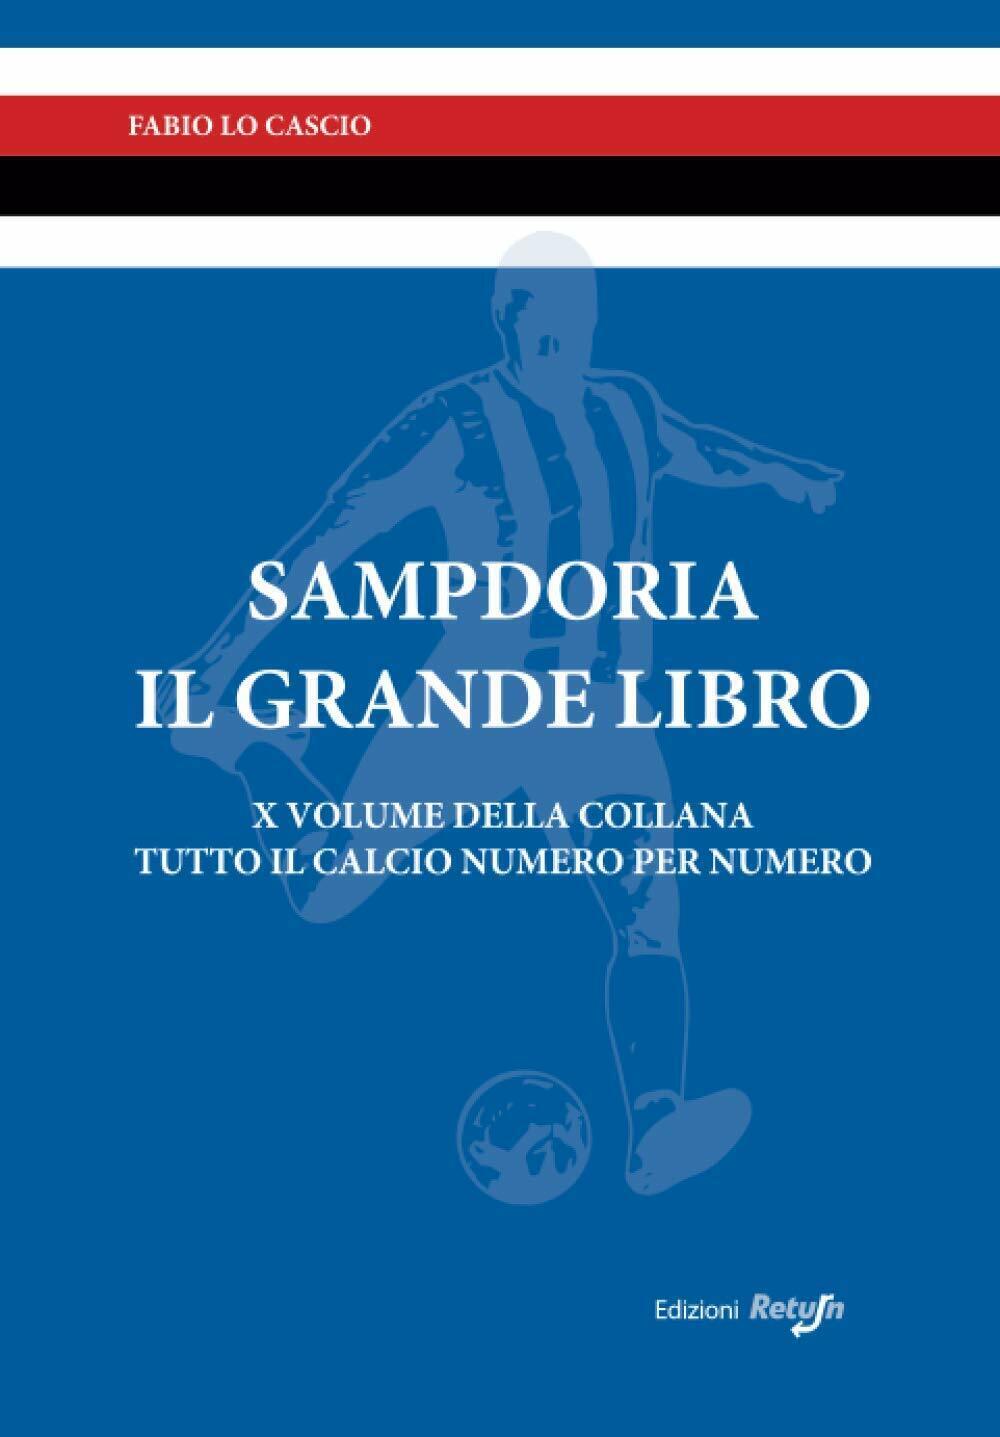 Sampdoria il Grande Libro - Fabio Lo Cascio - Return, 2019